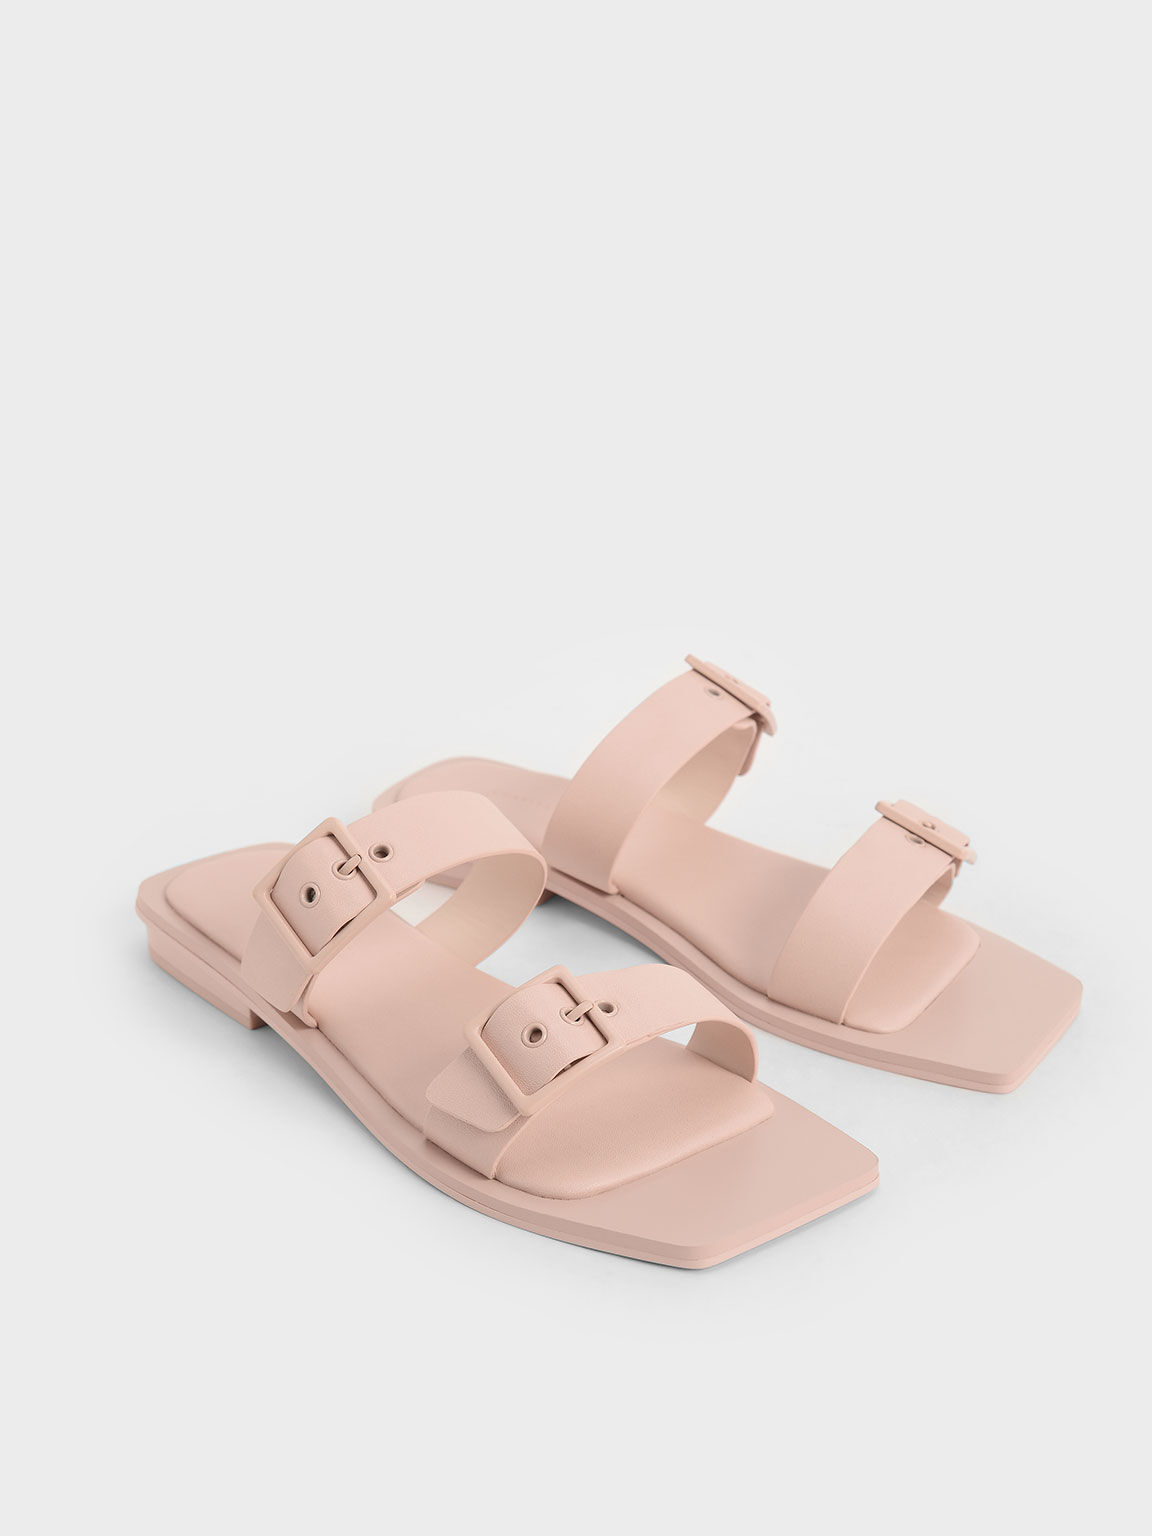 Sandal Slide Square Toe Buckled, Pink, hi-res